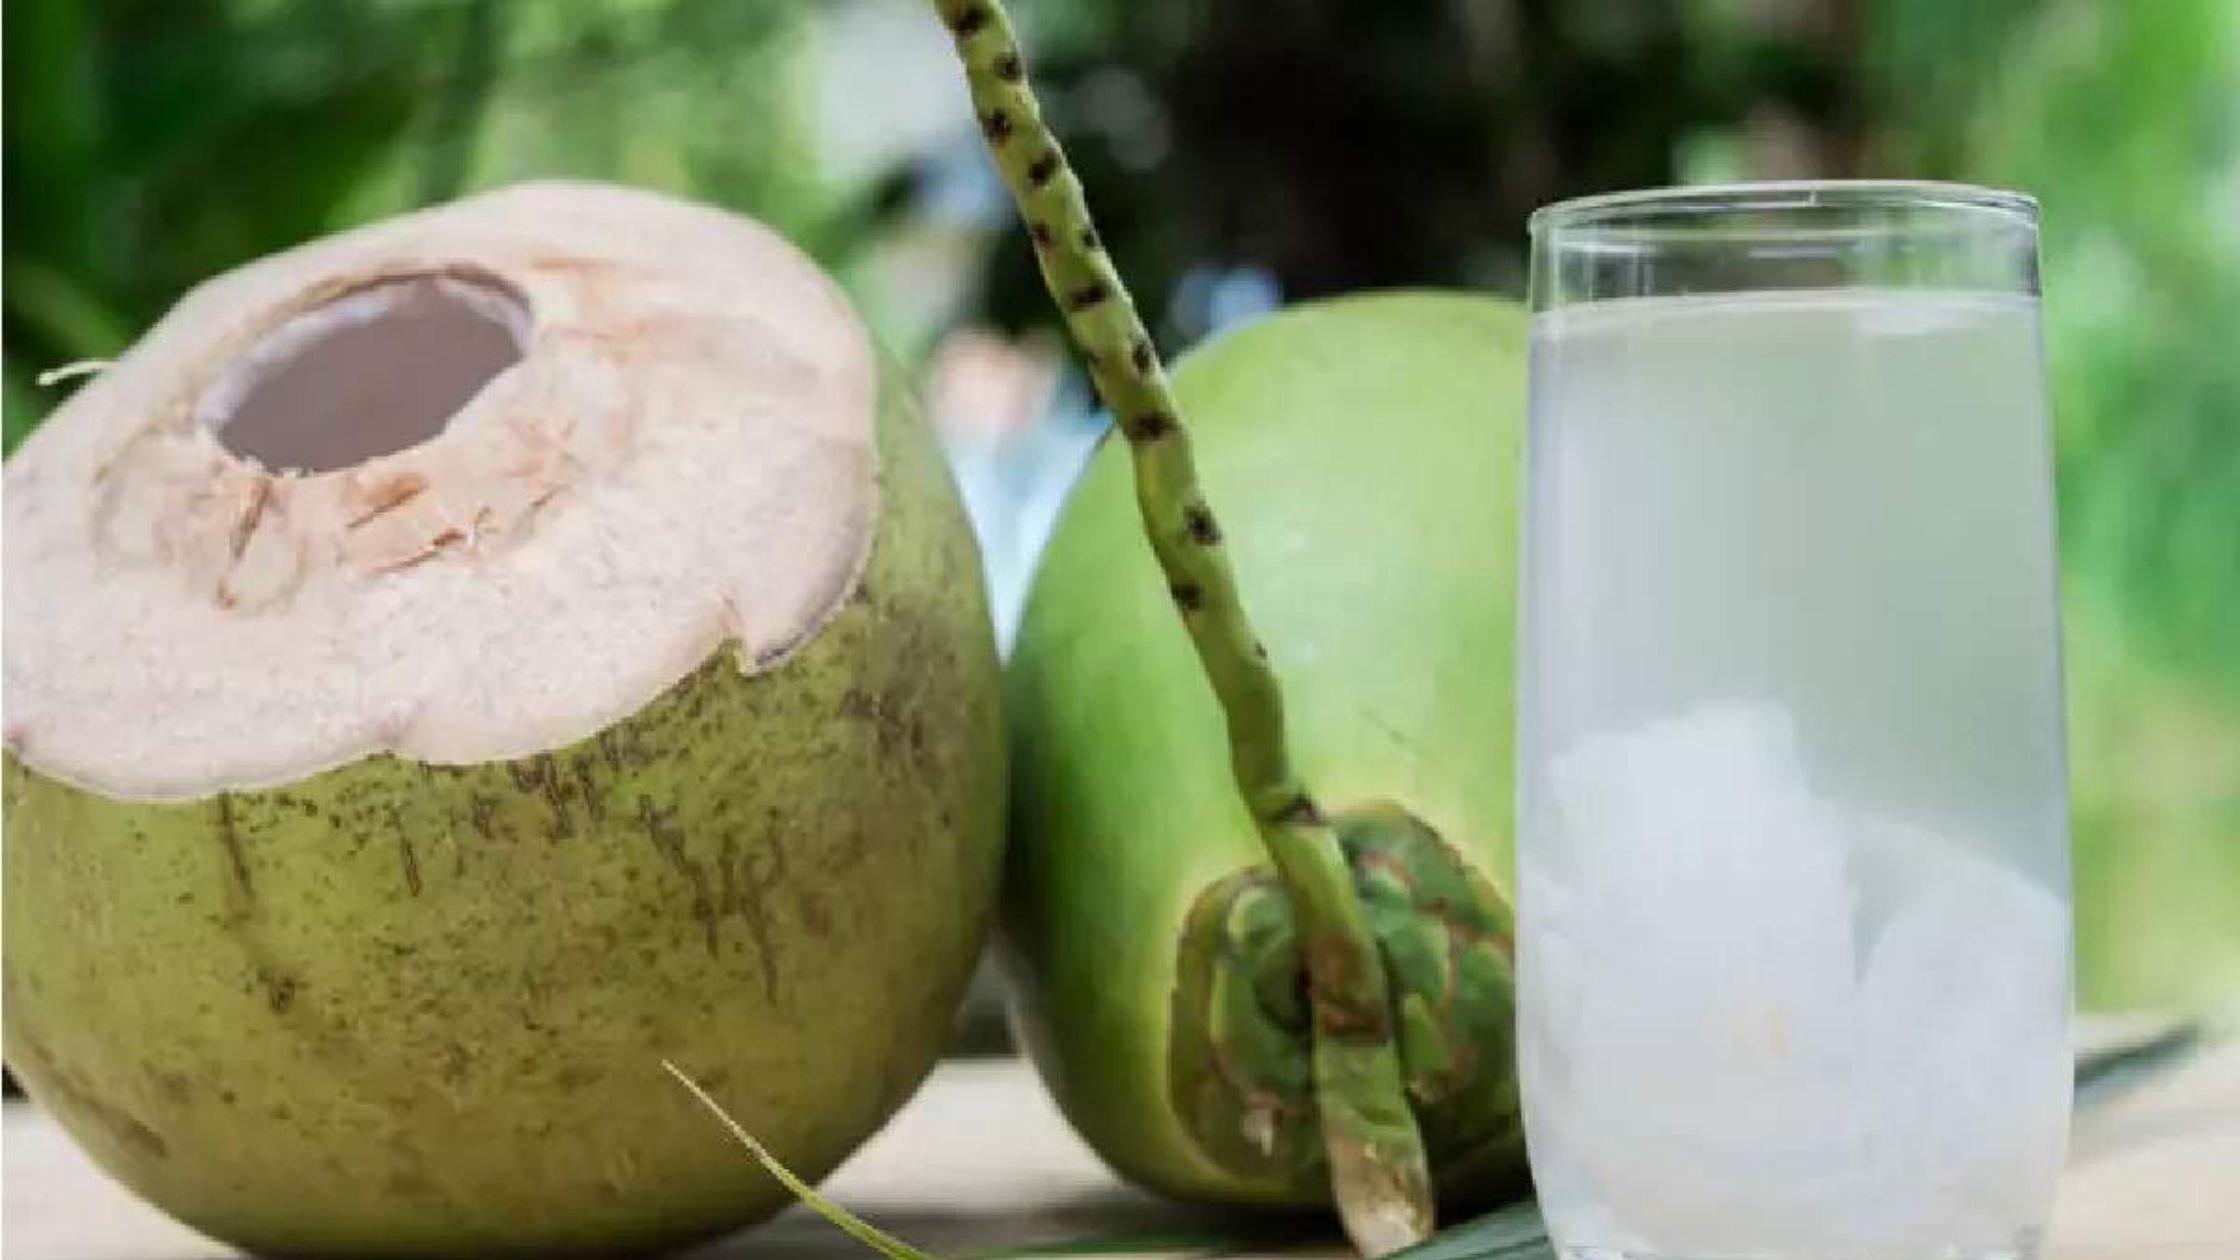 नारियल पानी का बिजनेस कैसे शुरू करें? | coconut water business plan in hindi |